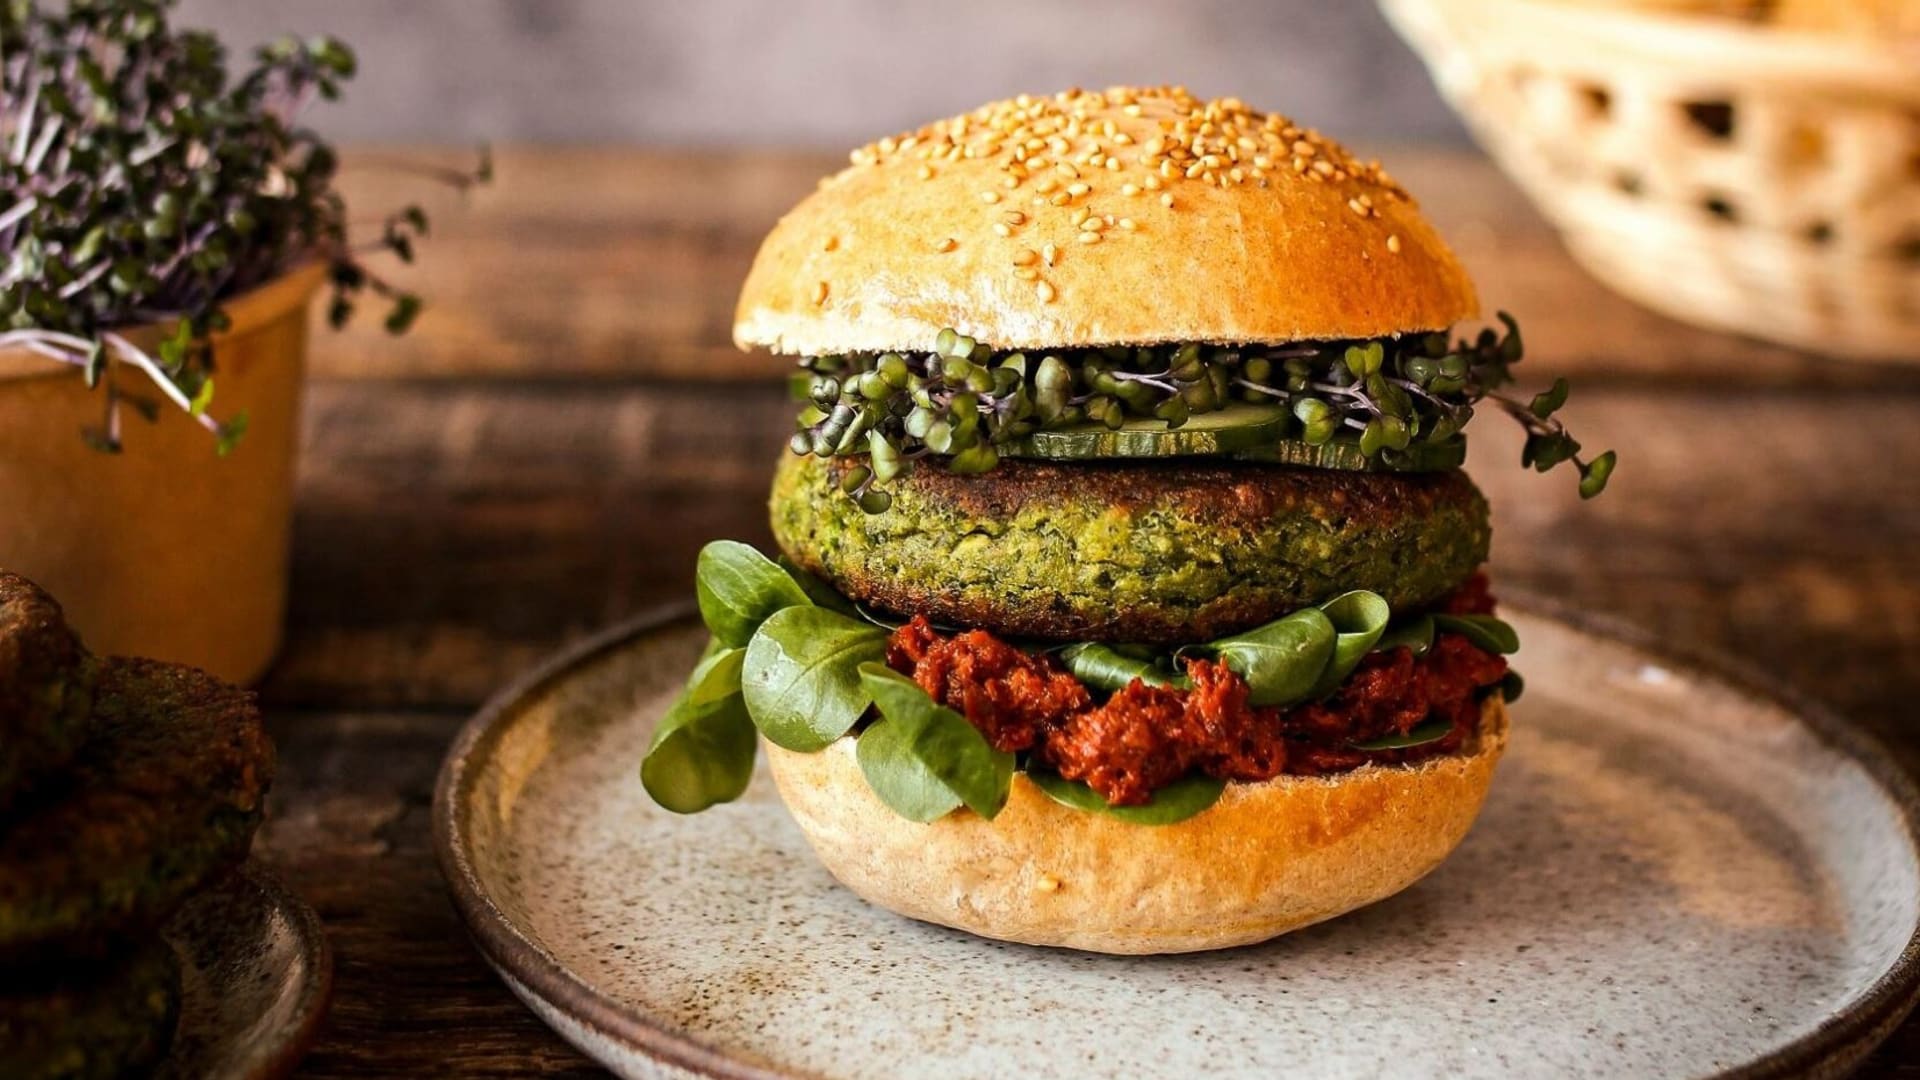 Na Zelený čtvrtek připravte zelené jarní burgery s hráškem a špenátem